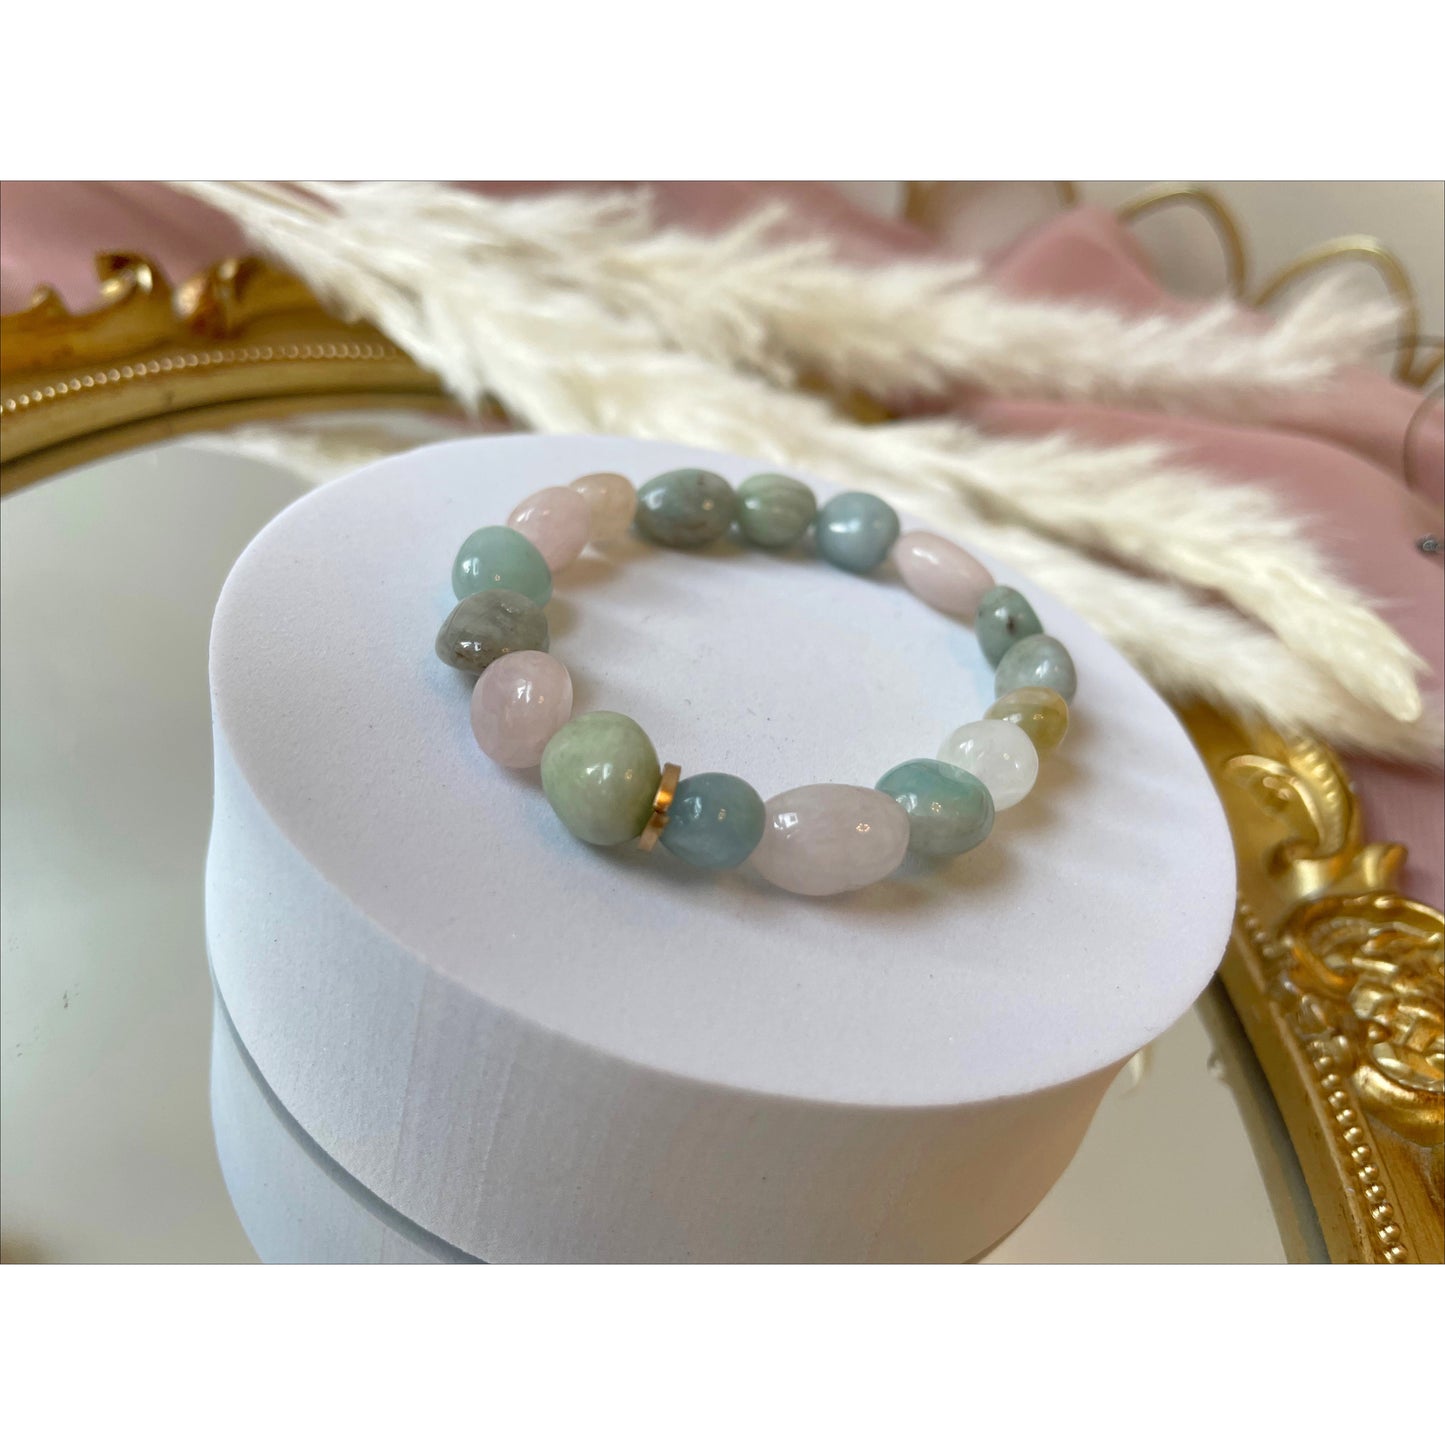 Faceted jade bracelets